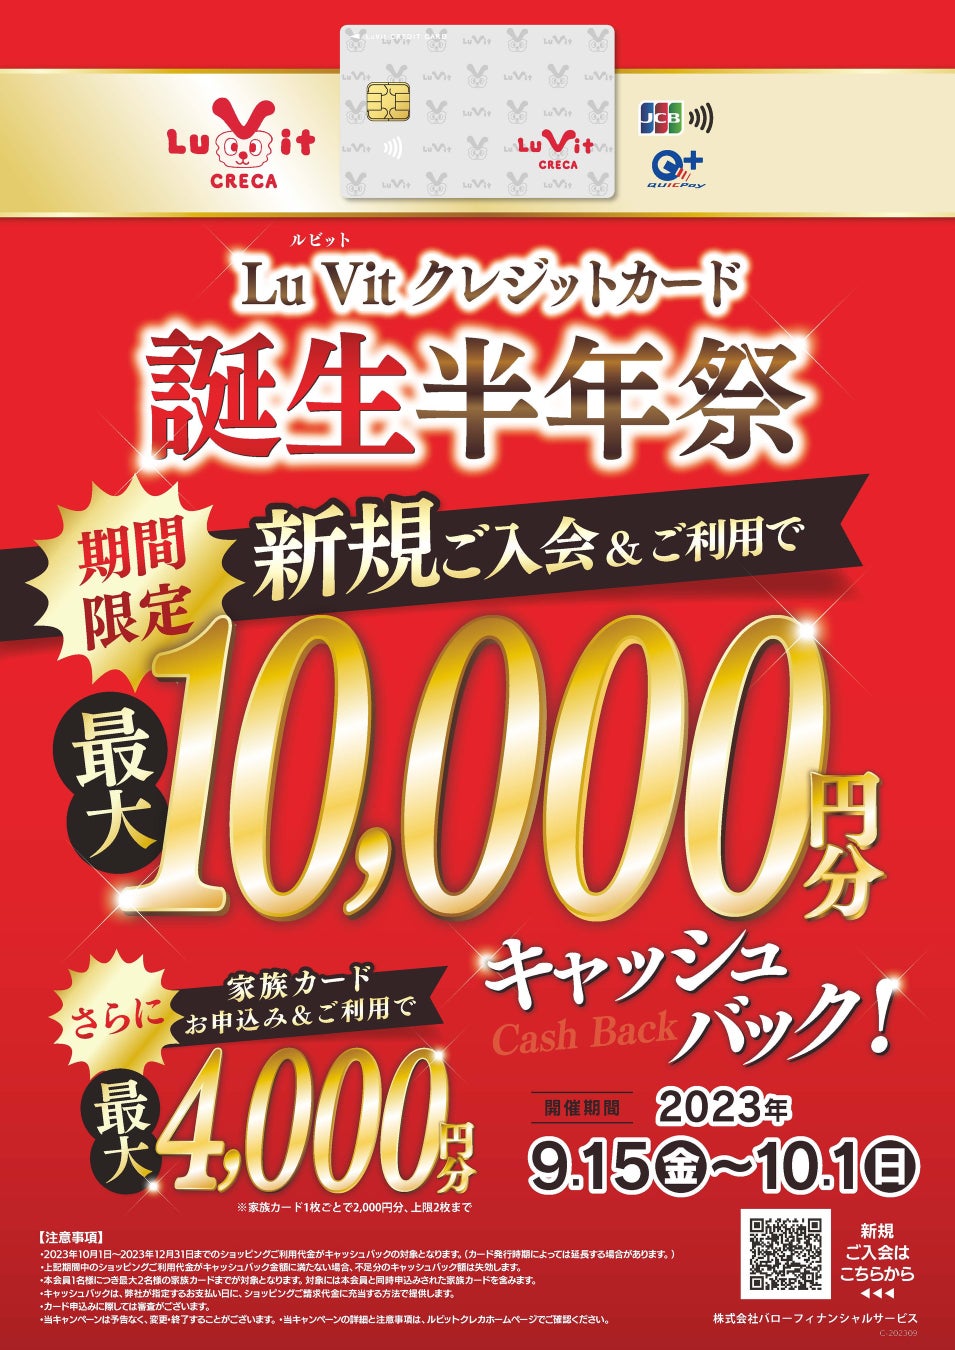 9/15 (金)から Lu Vit クレジットカード誕生半年祭開催！最大10,000円